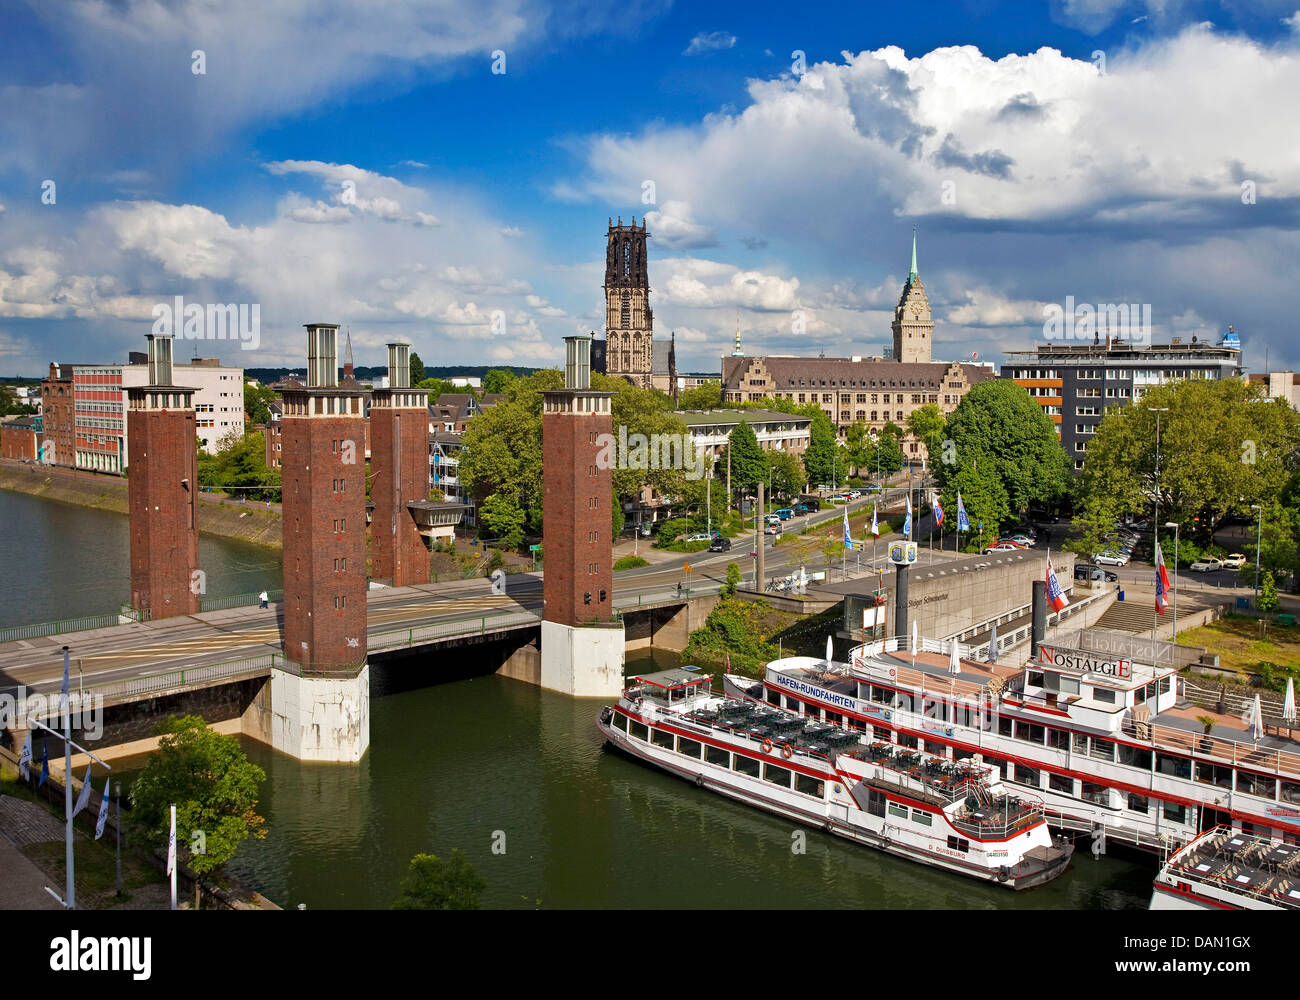 Innenhafen, Schwanentor, Salvatorkirche und Rathaus, Duisburg, Ruhrgebiet, Nordrhein-Westfalen, Deutschland Stockfoto